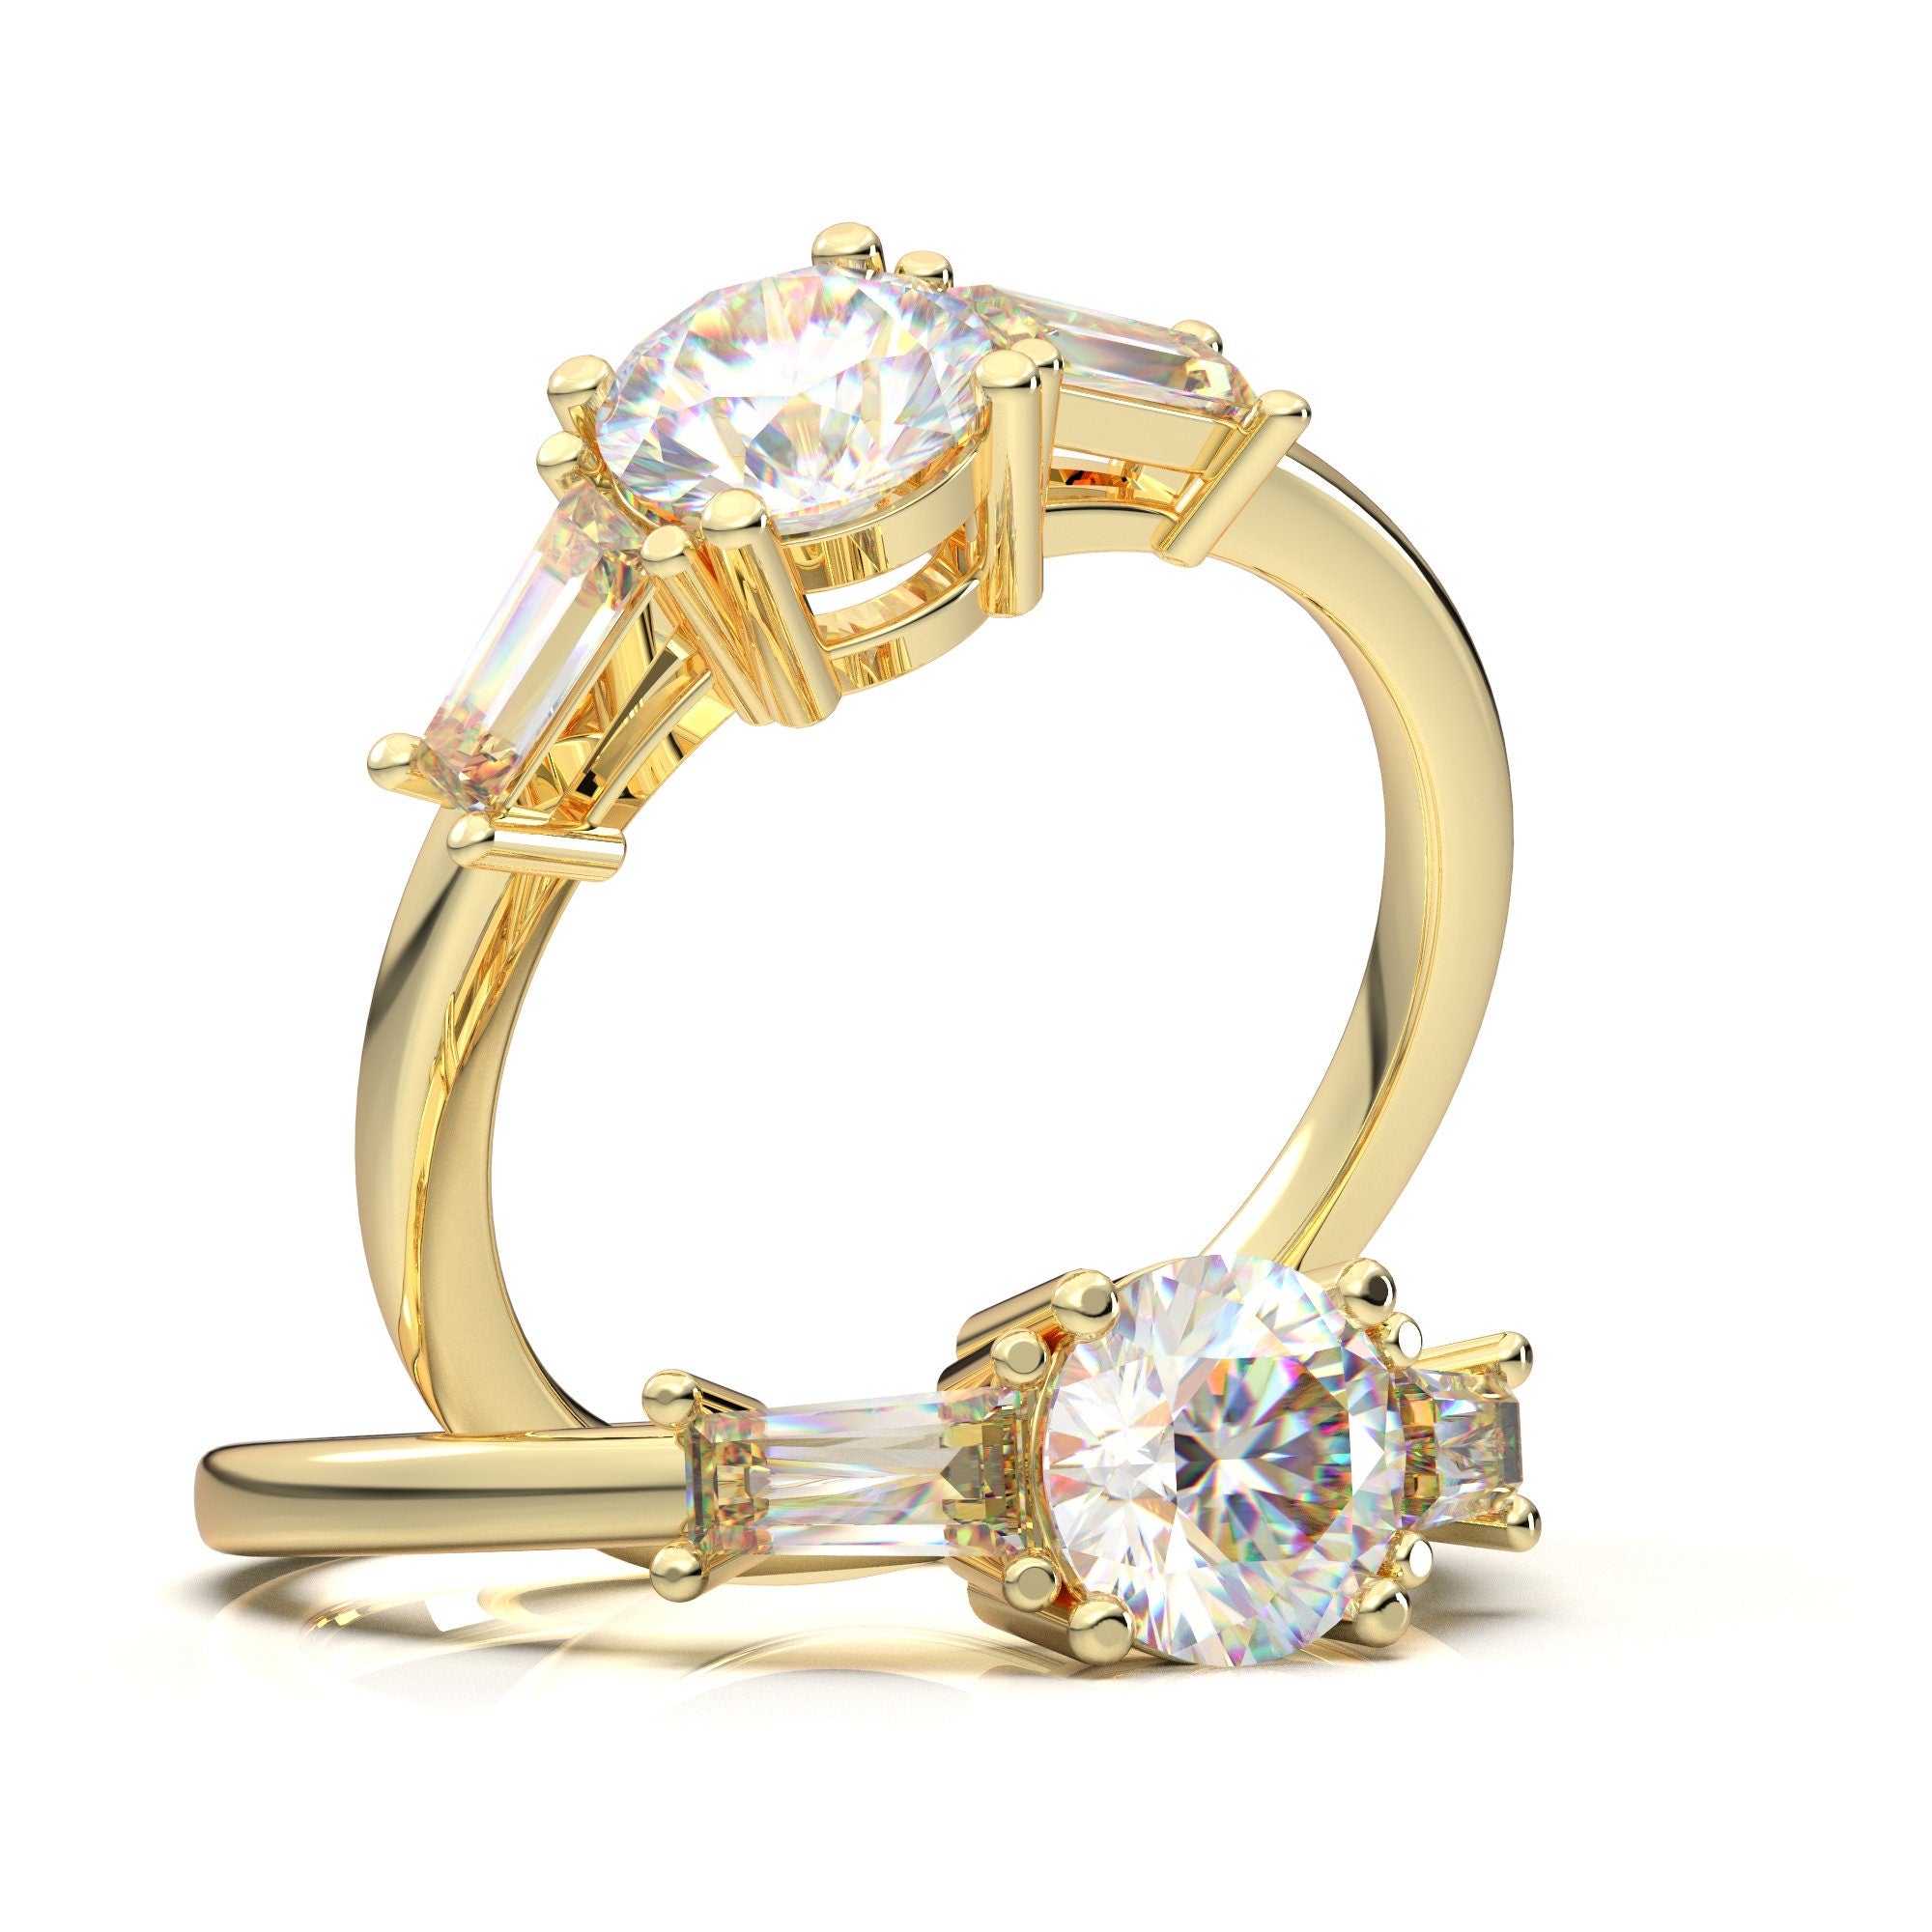 Platinum Delicate Heart Design Minimalist Promise Ring For Women | eBay